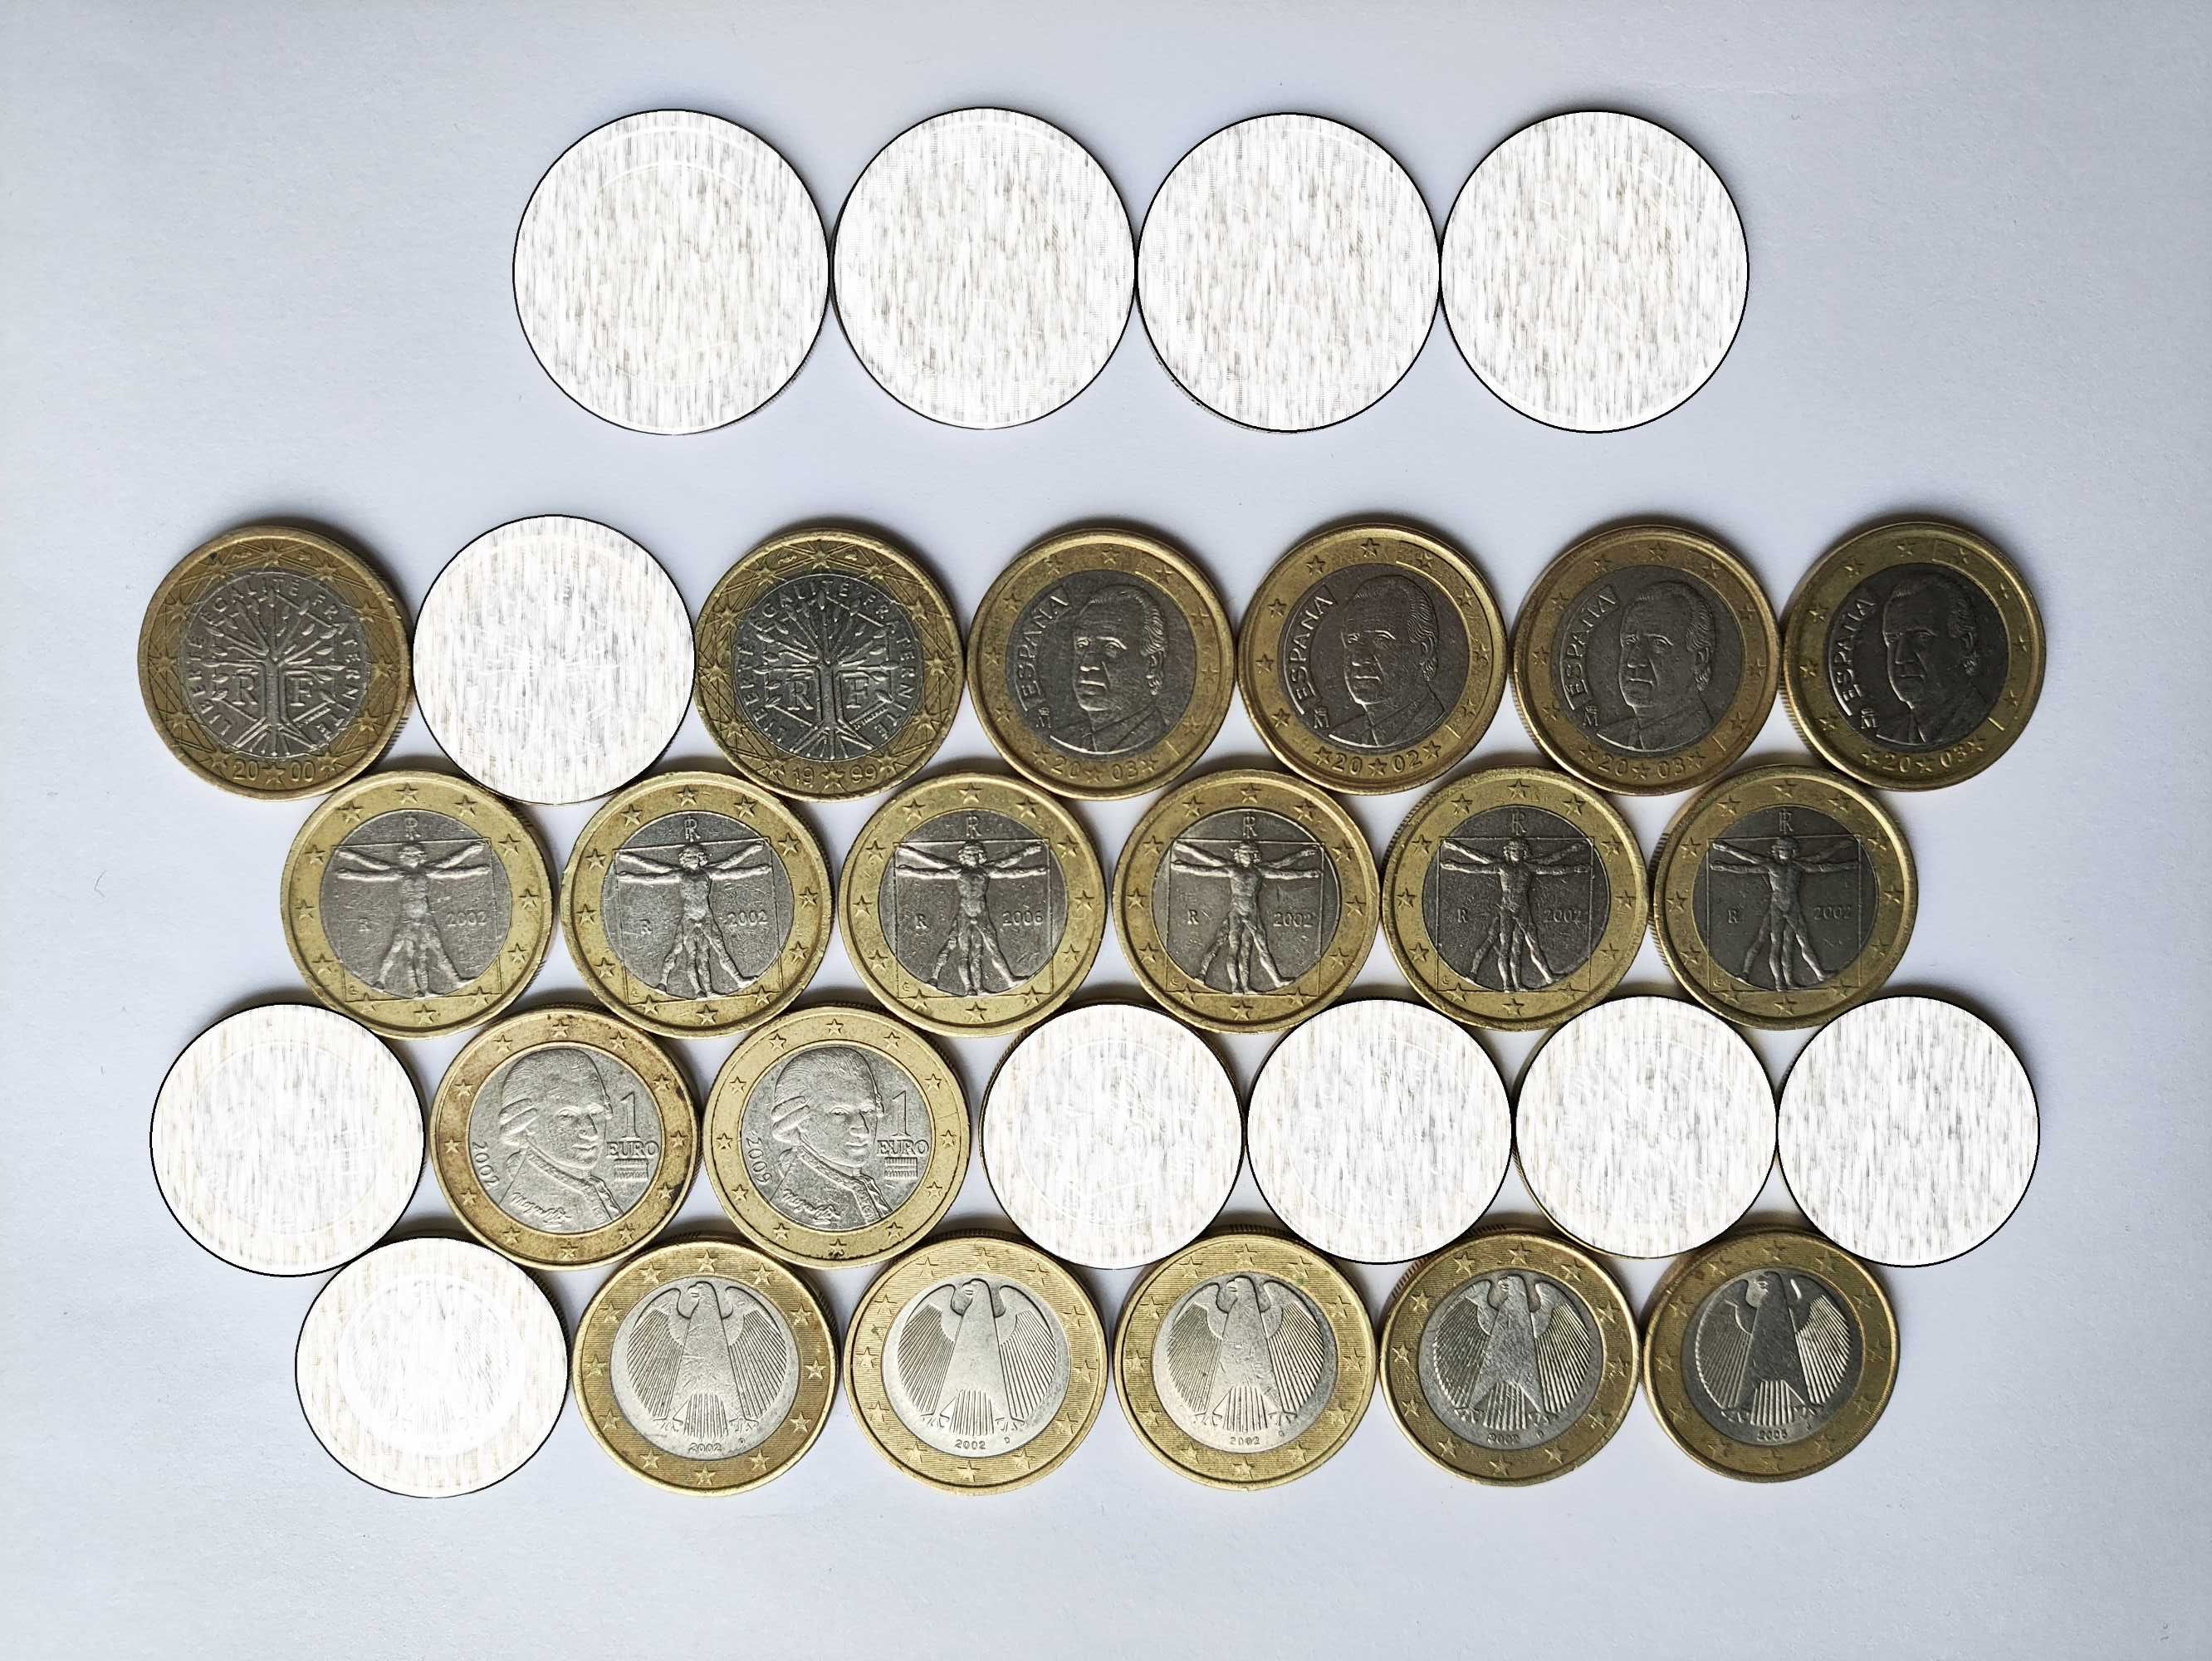 Євроценти (обігові монети)